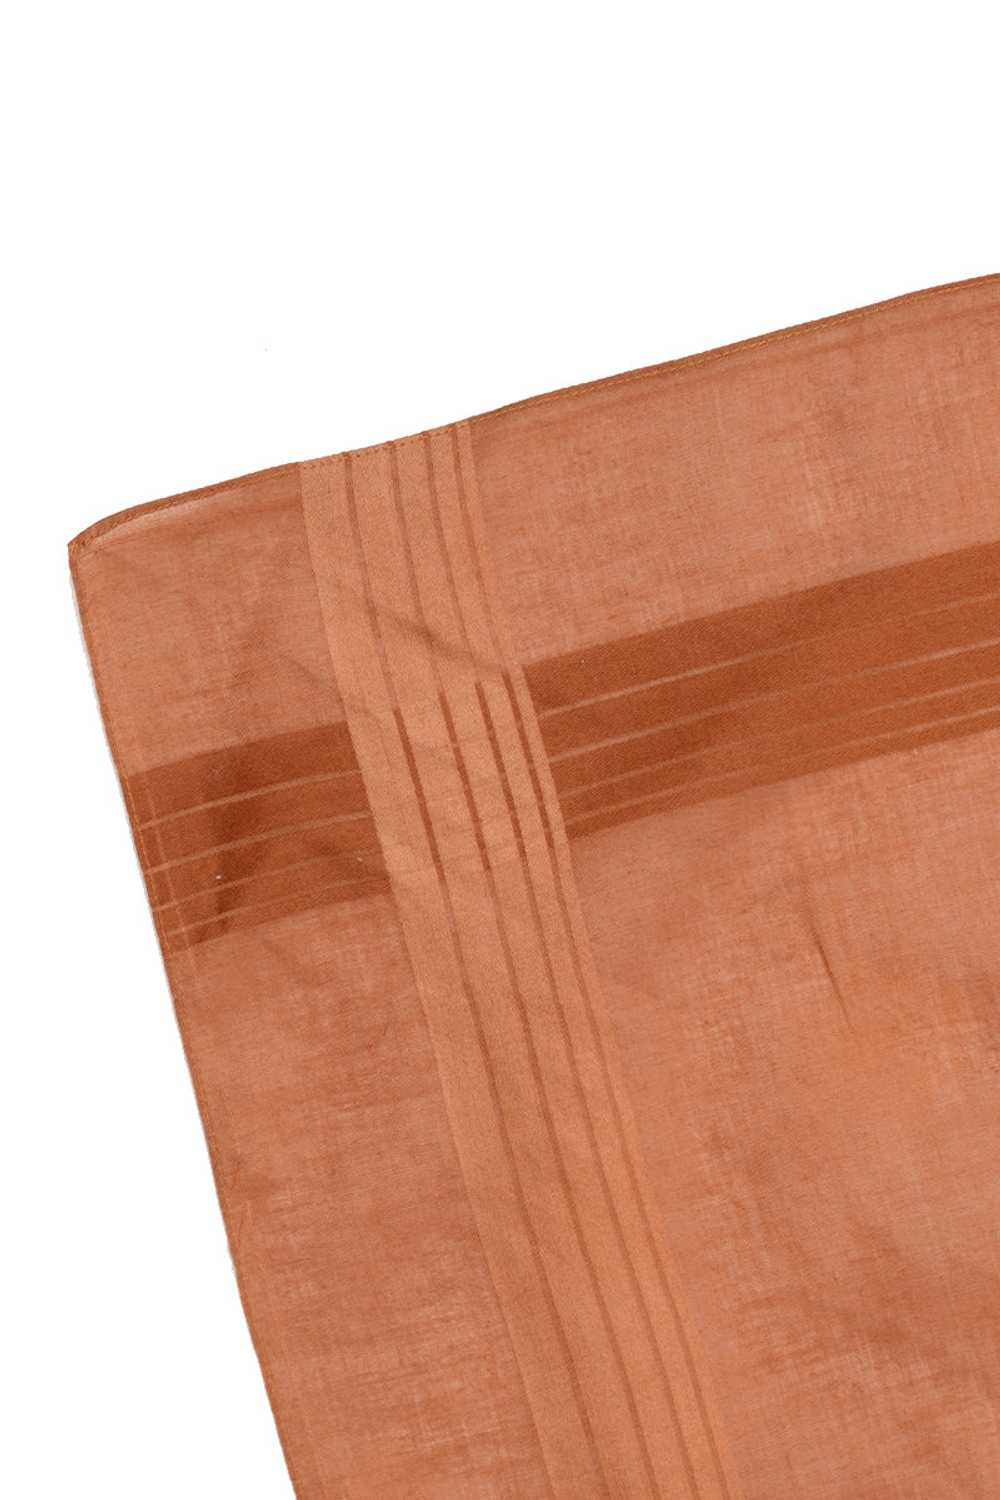 1970s Pappagallo Copper Brown Square Cotton Scarf - image 3